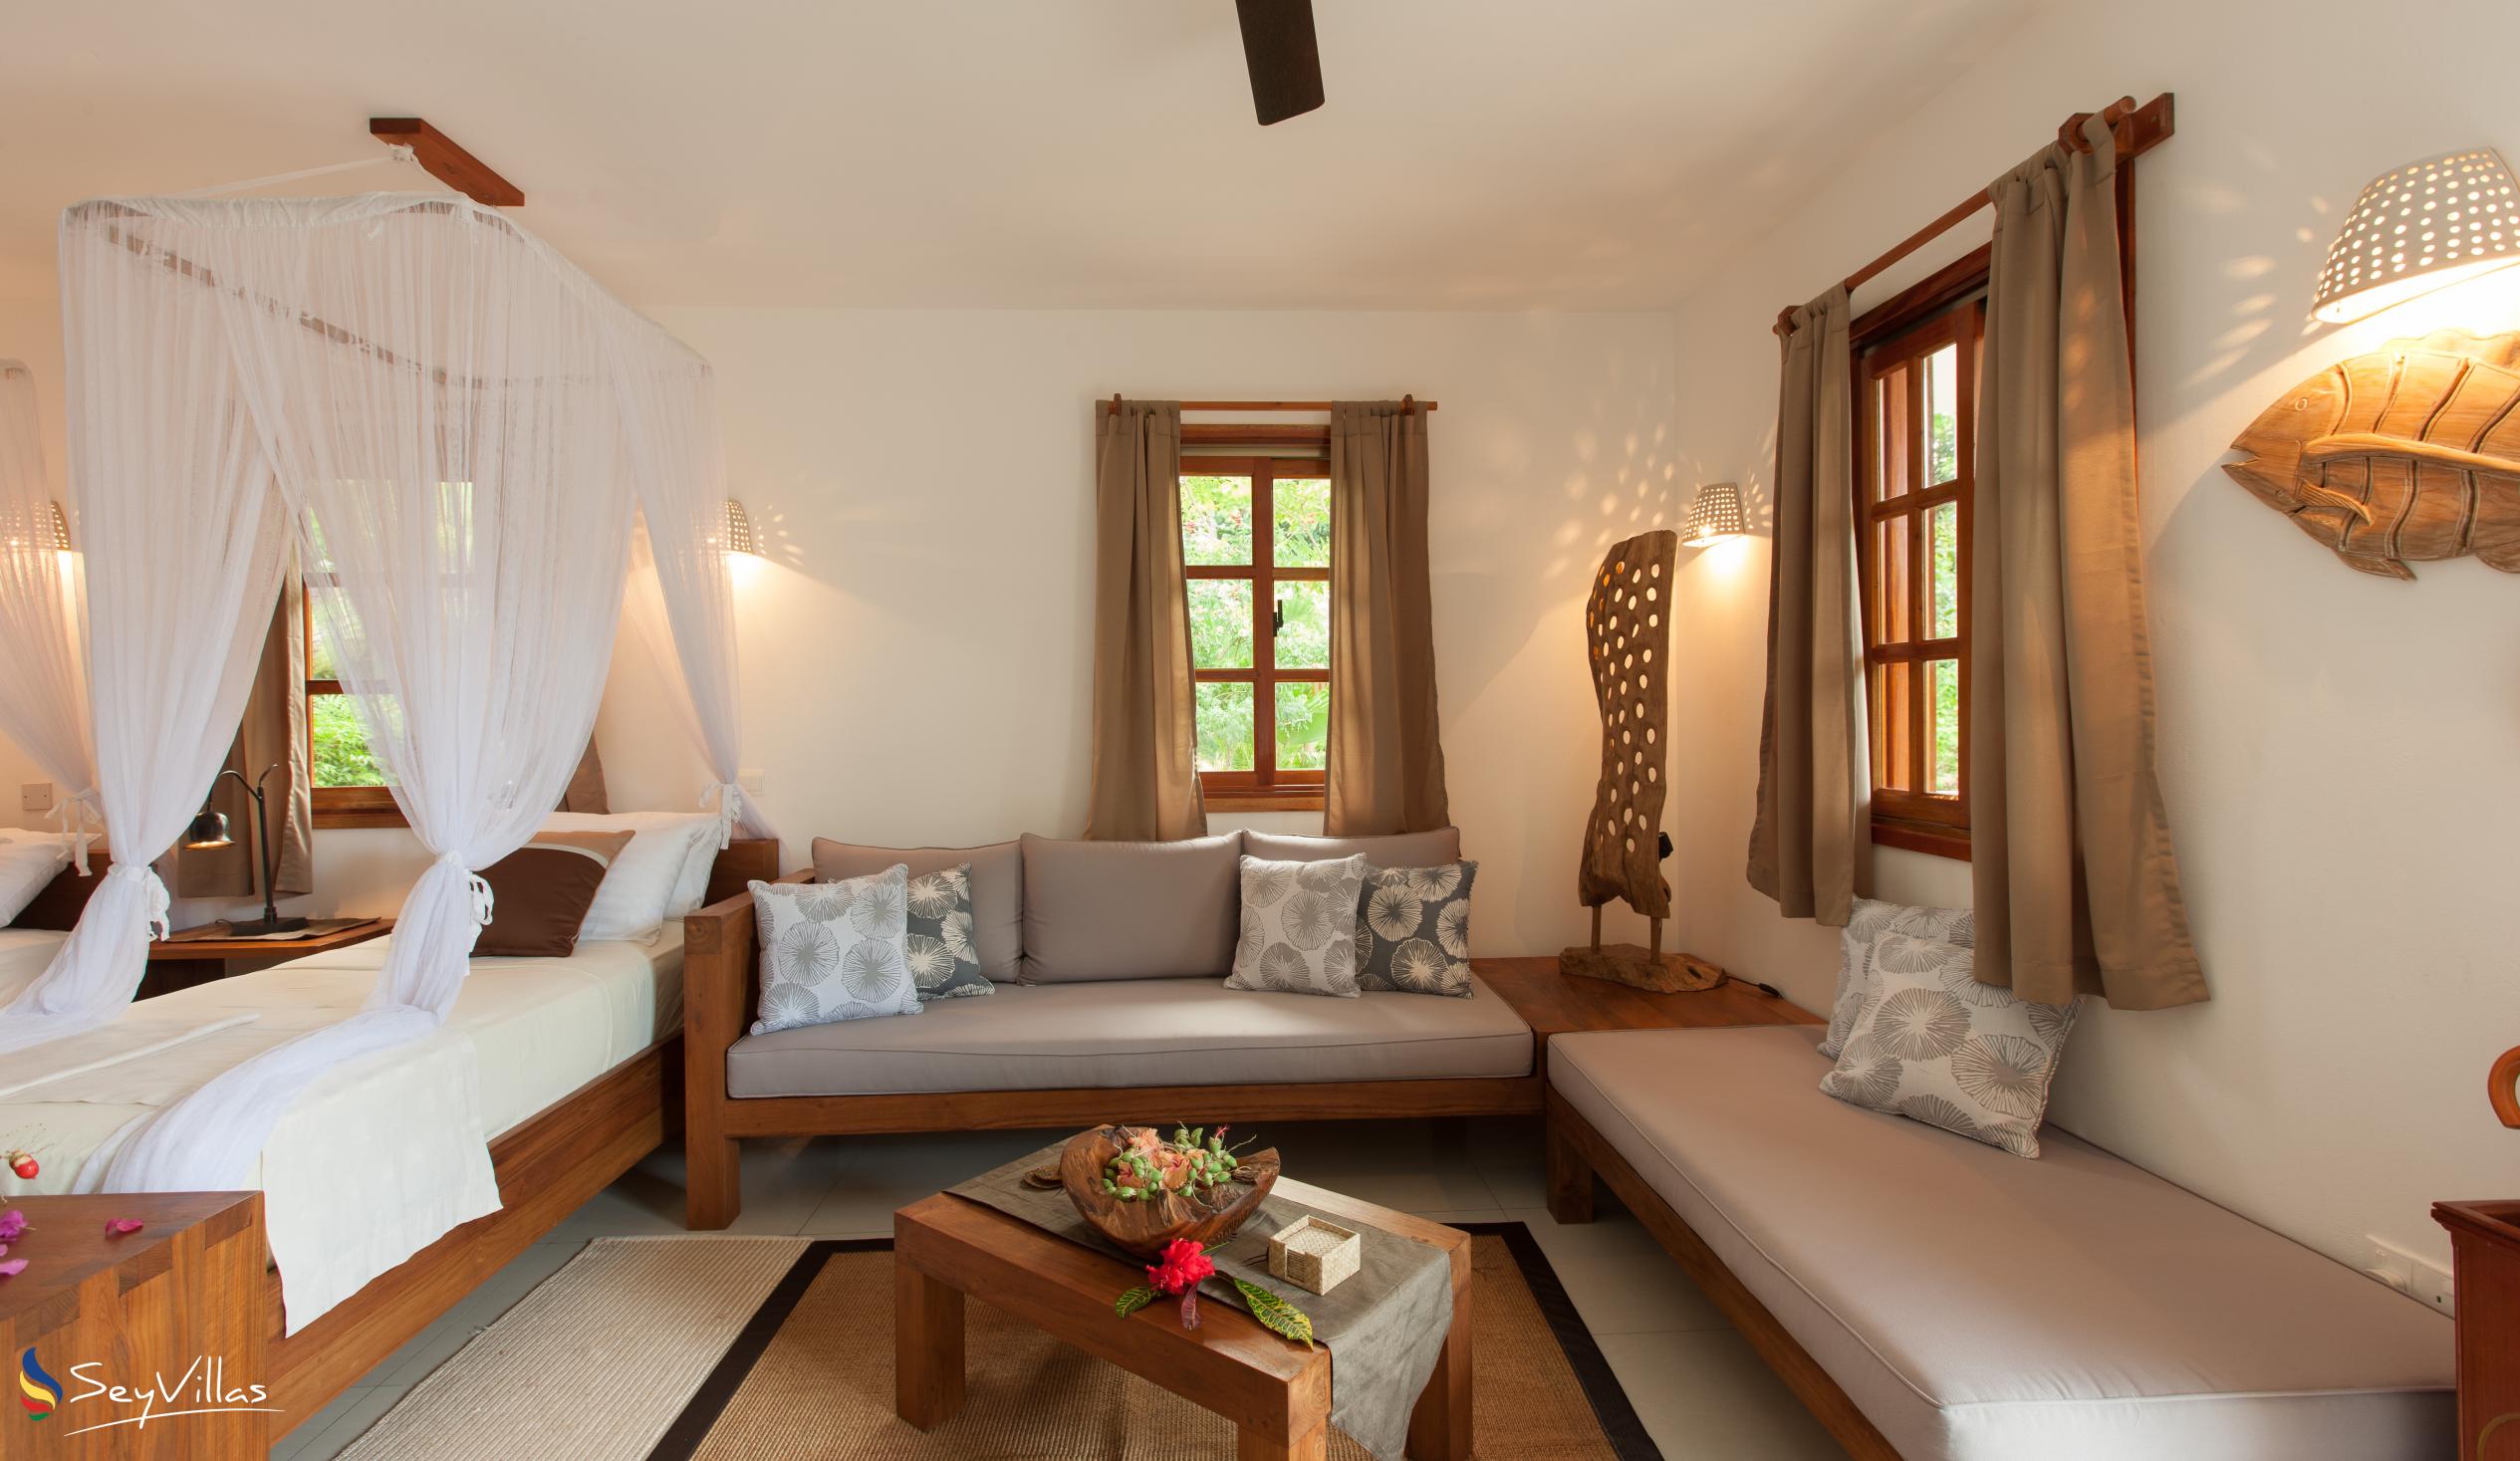 Foto 49: Domaine Les Rochers - Appartamento di Lusso Piano Terra Kaz Rochers - La Digue (Seychelles)